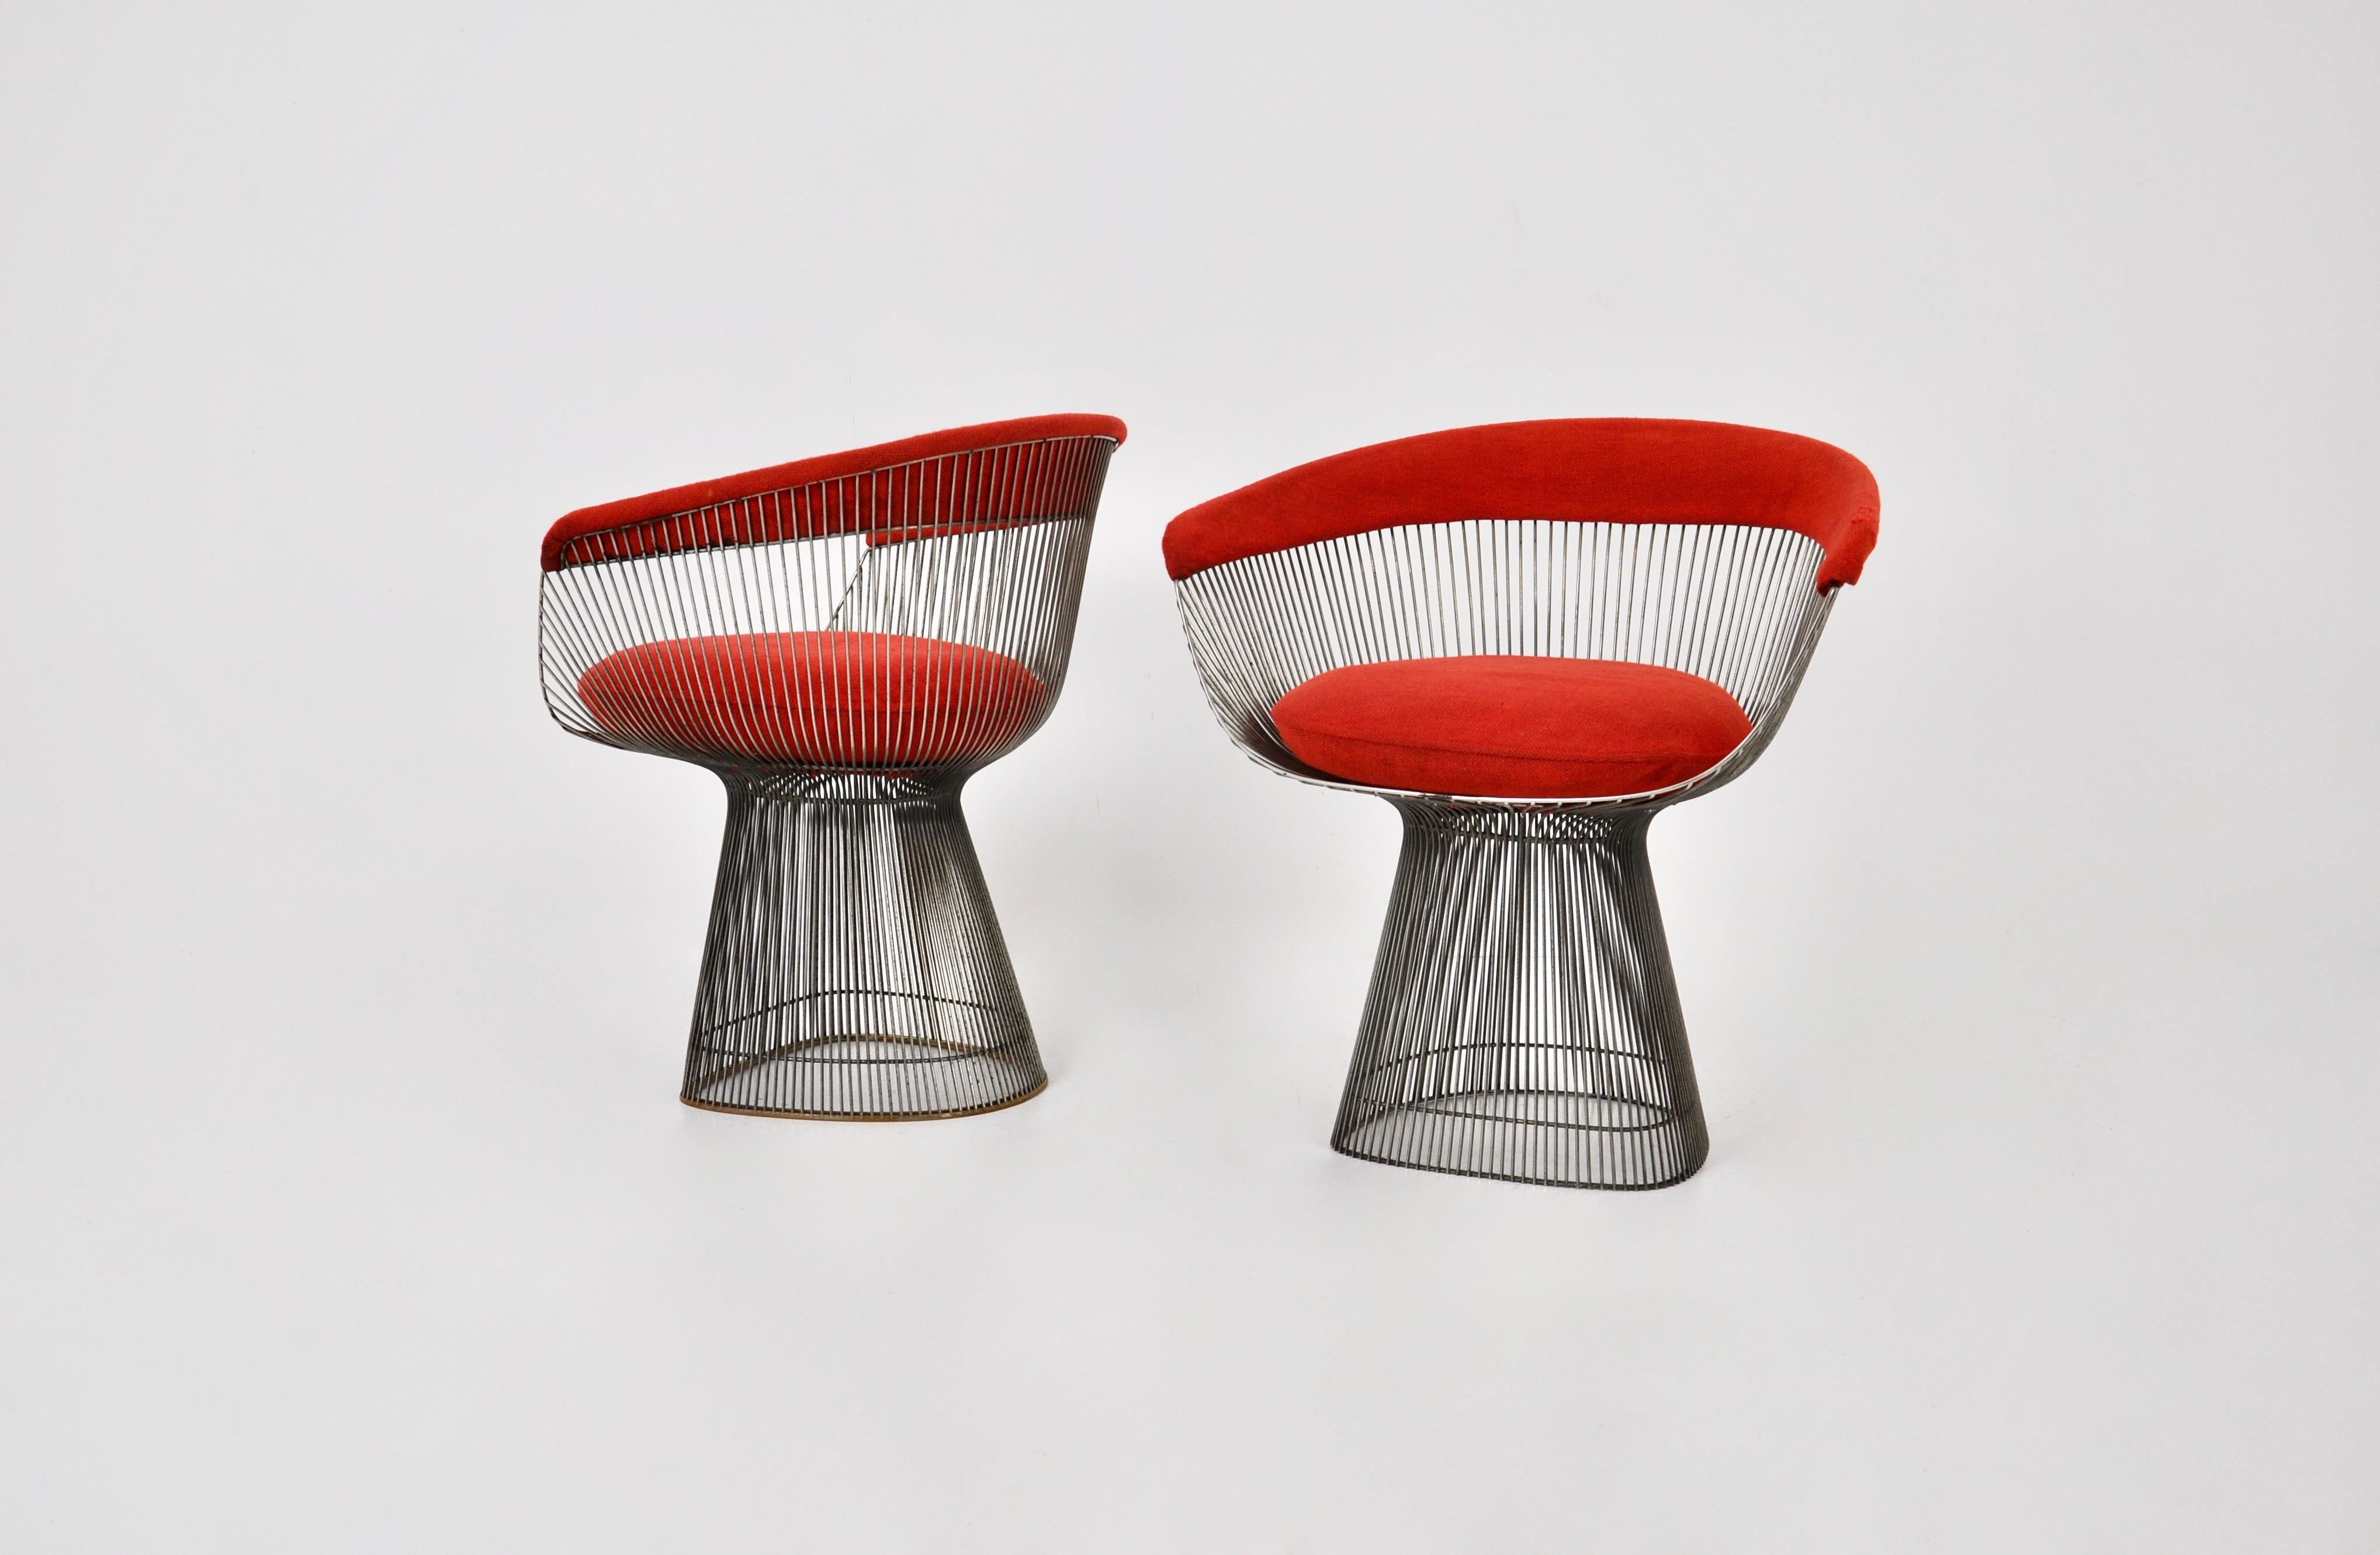 Sessel von Warren Platner aus Metall und mit rotem Originalstoff. Knoll-Ausgabe. Sitzhöhe: 47 cm. Abnutzung durch die Zeit und das Alter des Sessels.